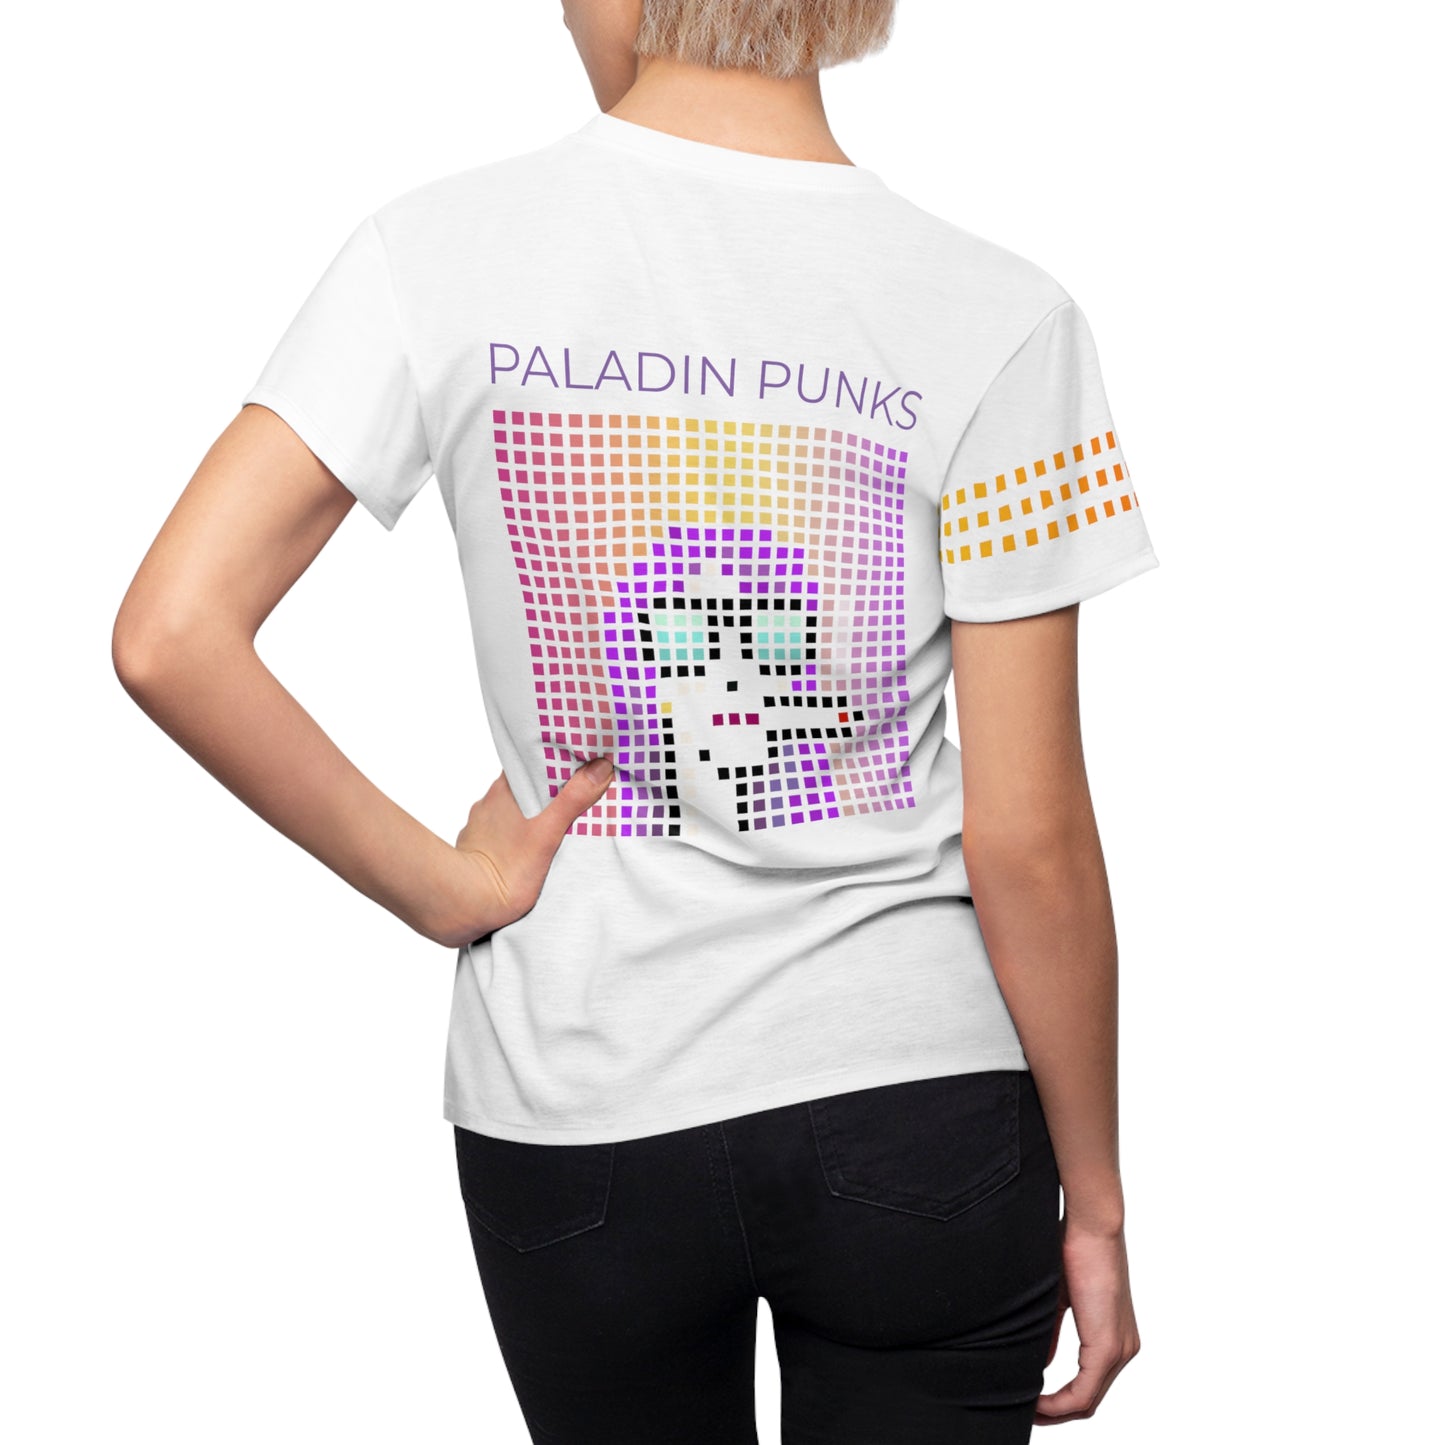 Paladin Punks White T-shirt Short Sleeve Sublimation Dye